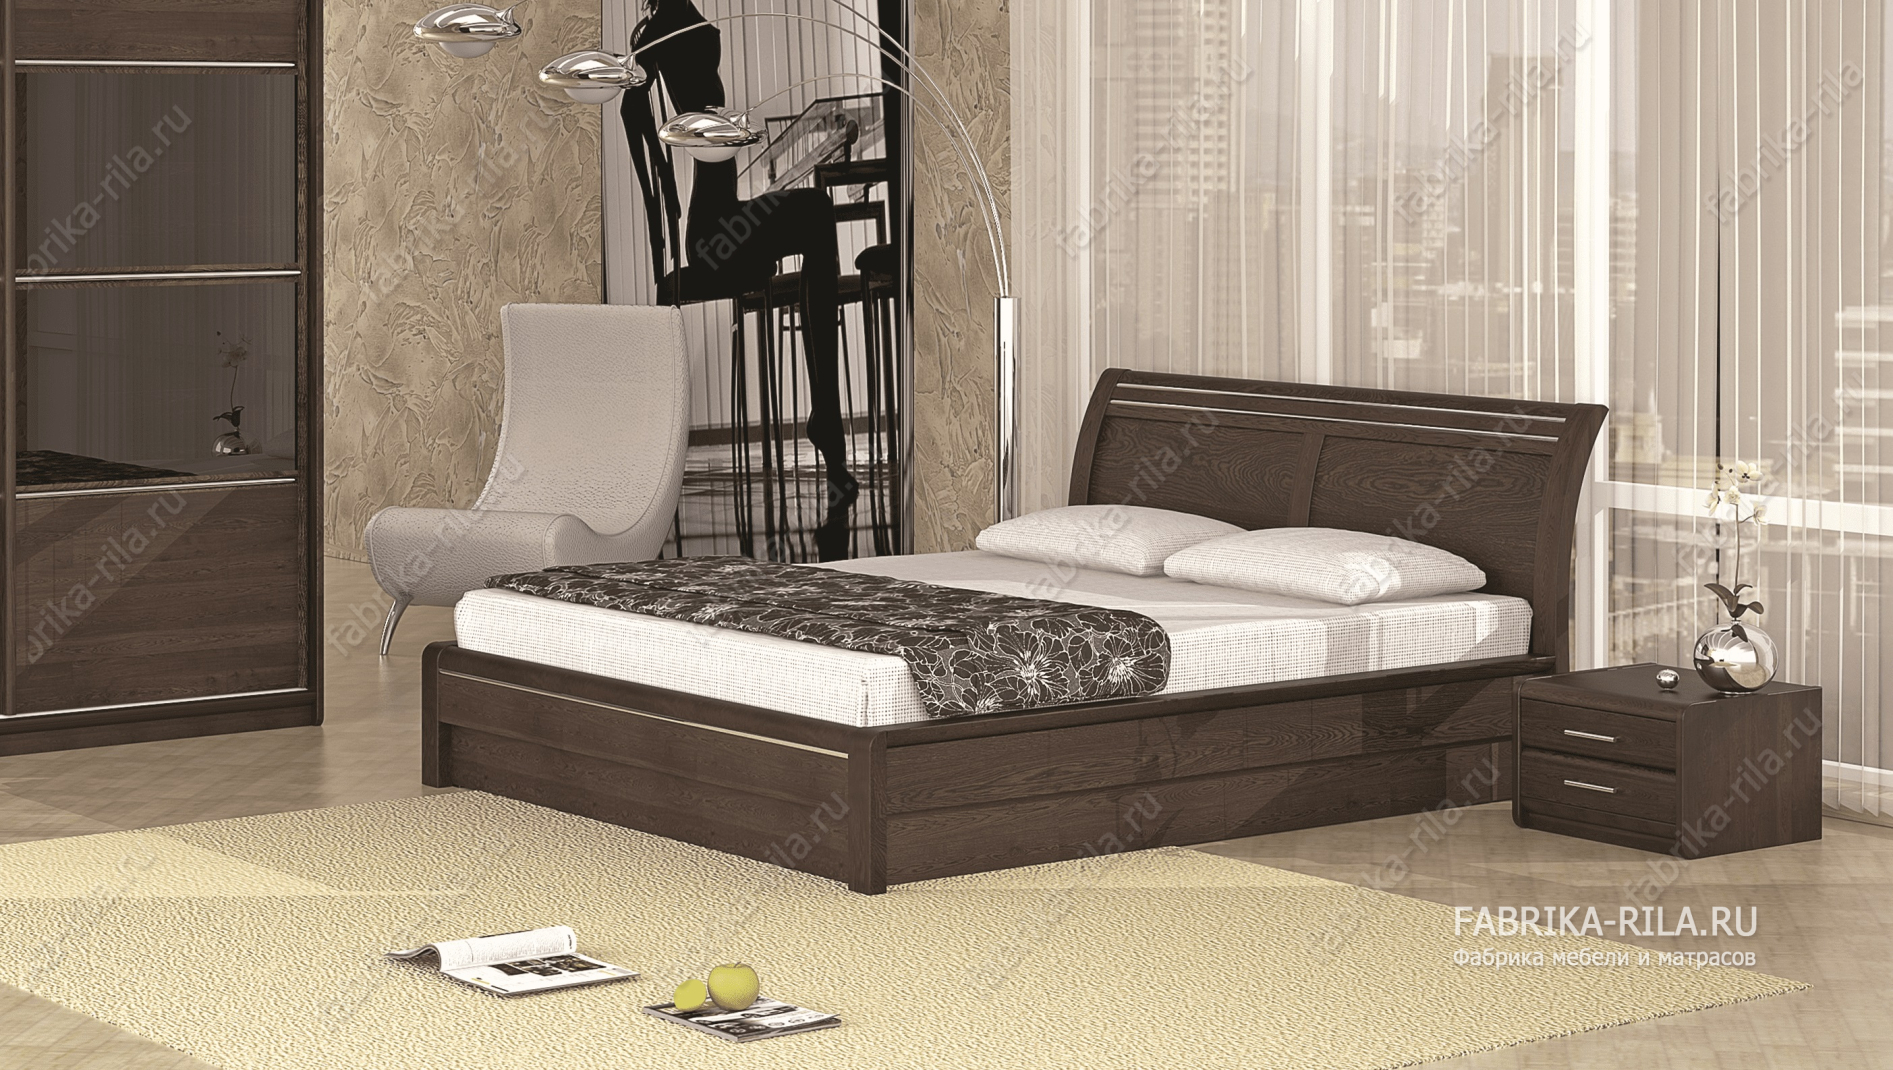 Кровать Okaeri 2 — 140x190 см. из сосны